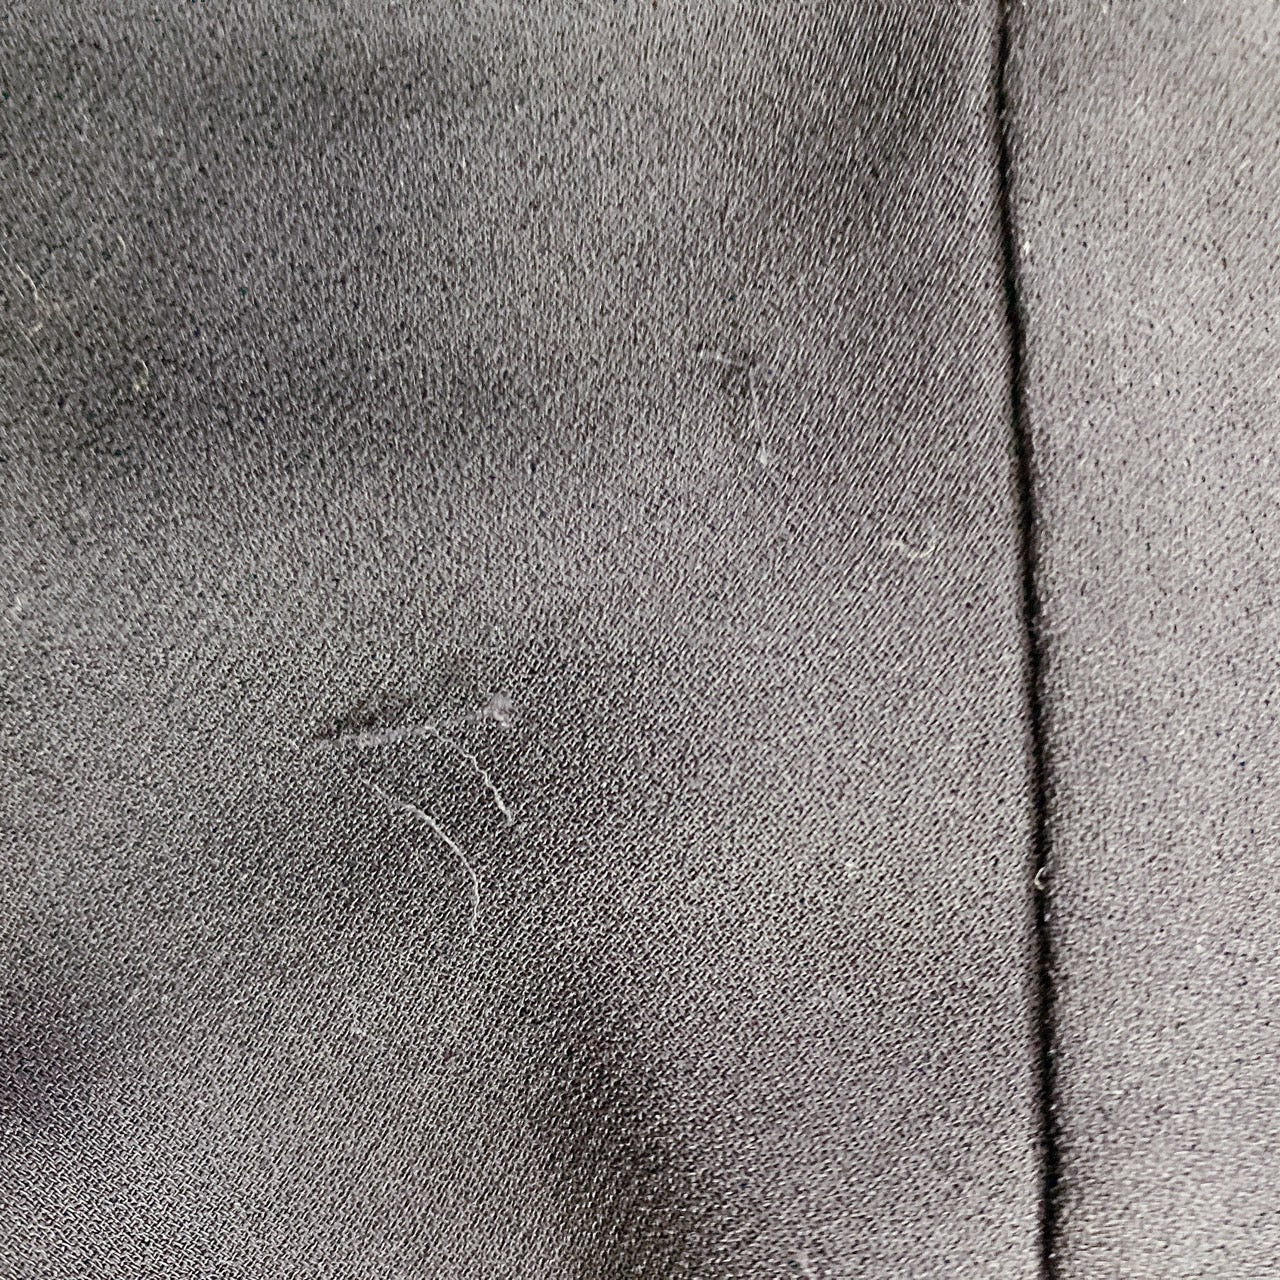 【27932】 Sov. DOUBLE STANDARD CLOTHING ソブ ダブルスタンダードクロージング ノースリーブシャツ サイズF ブラック 無地 レディース